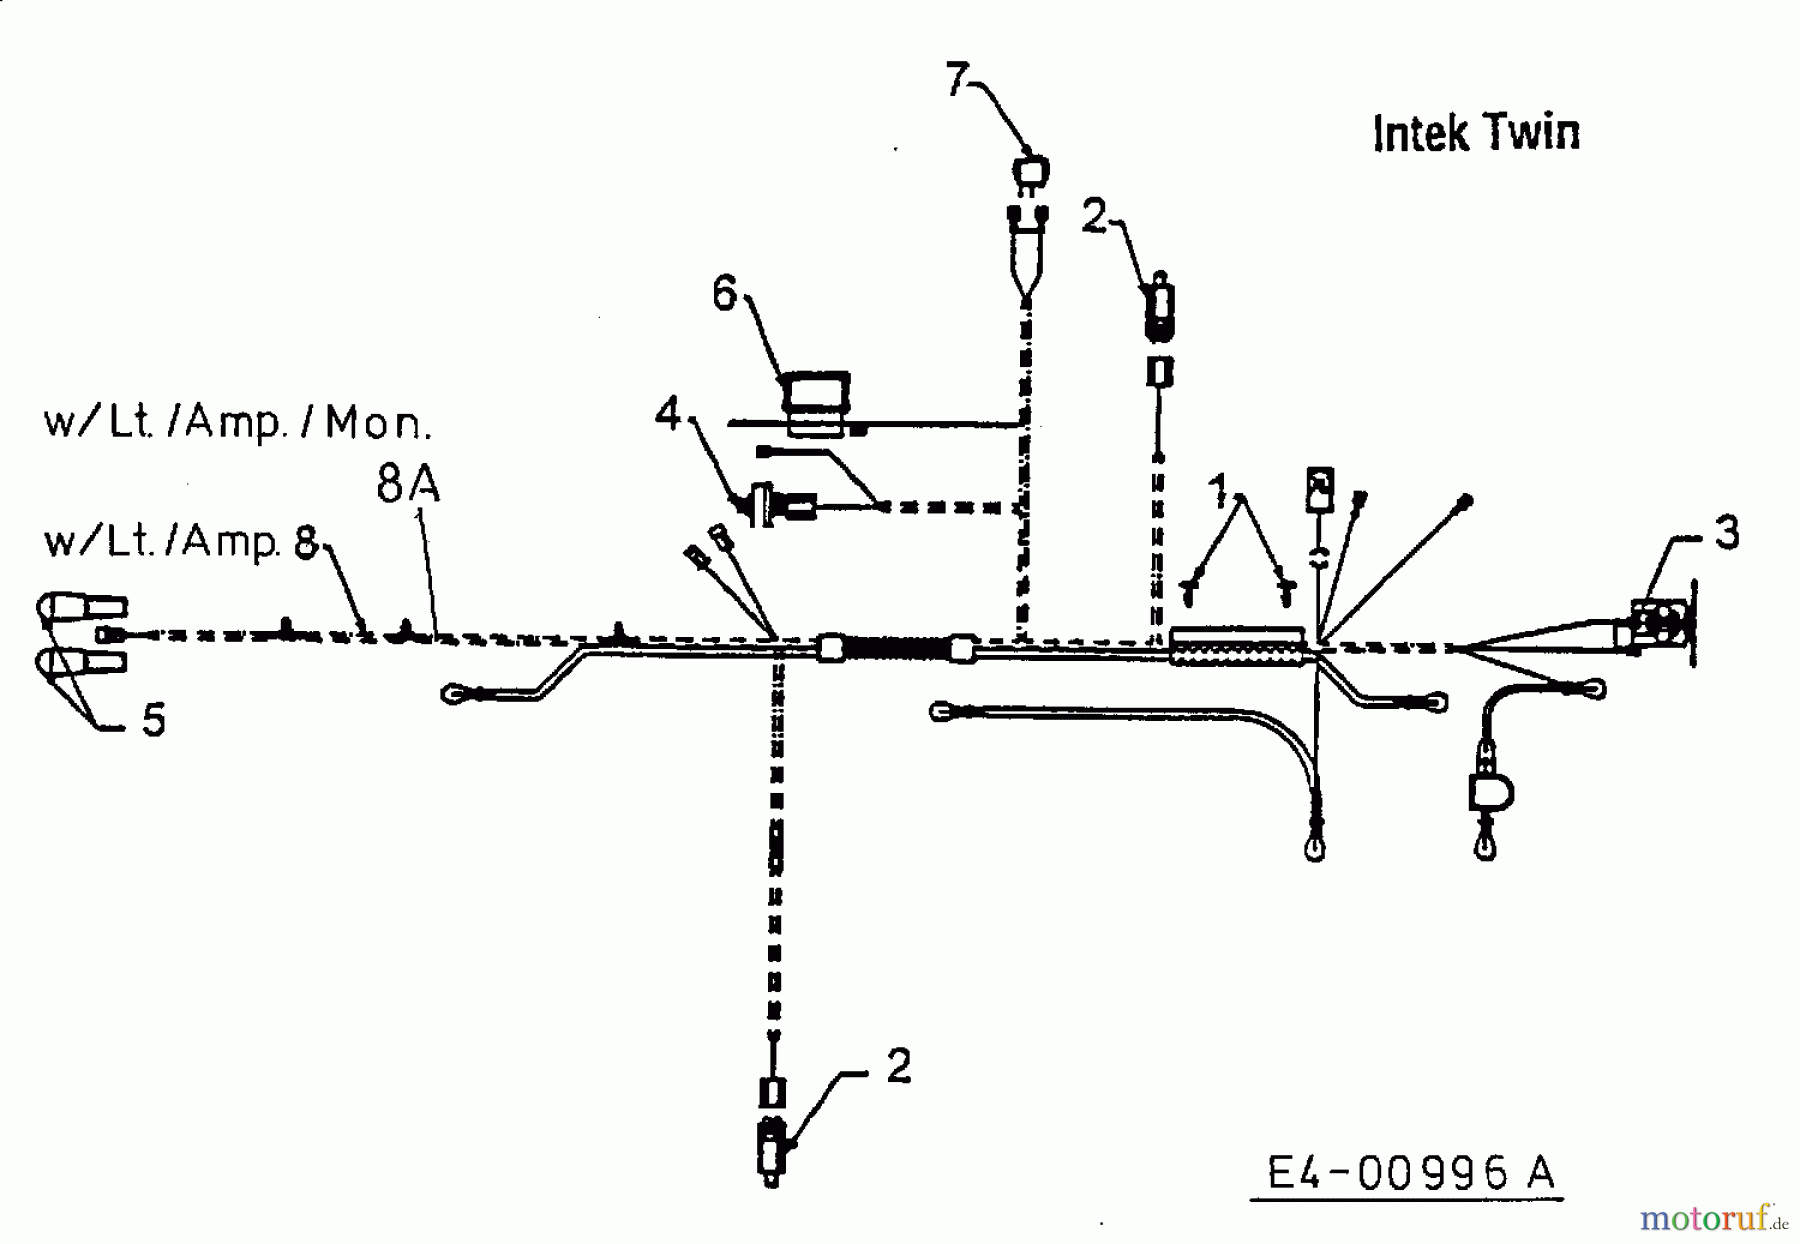  MTD Rasentraktoren H 160 13AF695G678  (1998) Schaltplan Intek Twin